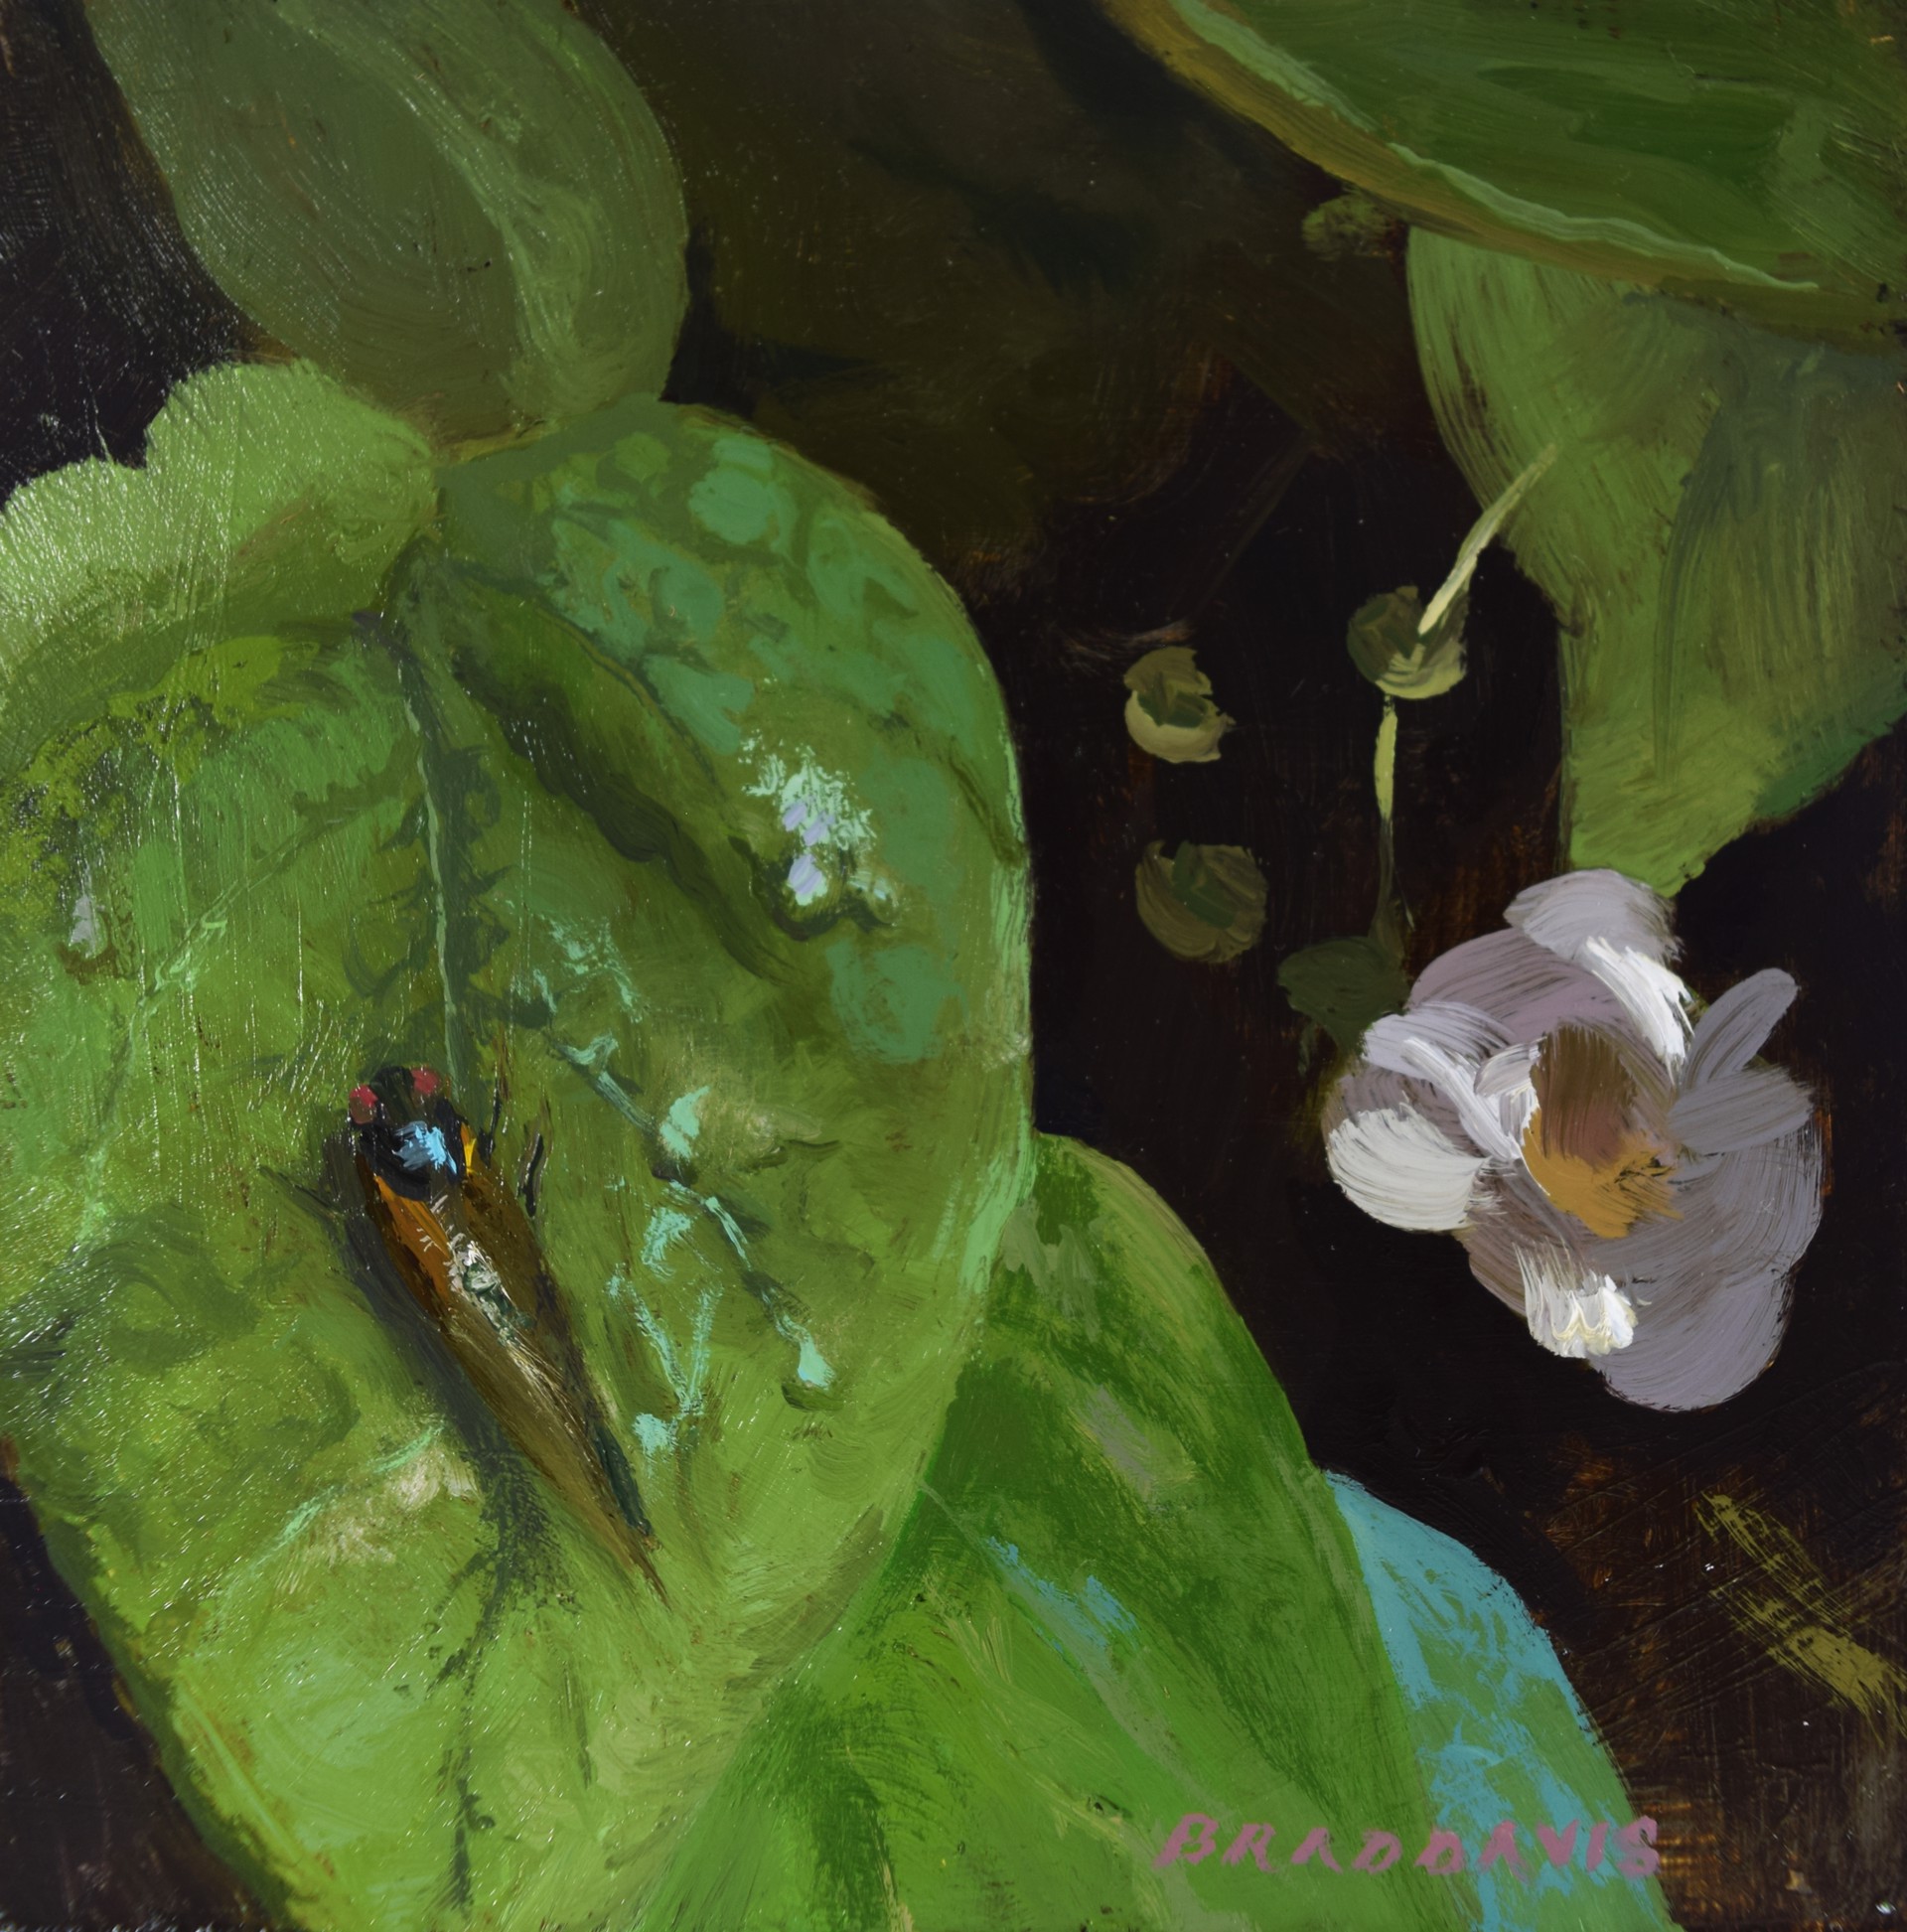 Cicada by Brad Davis